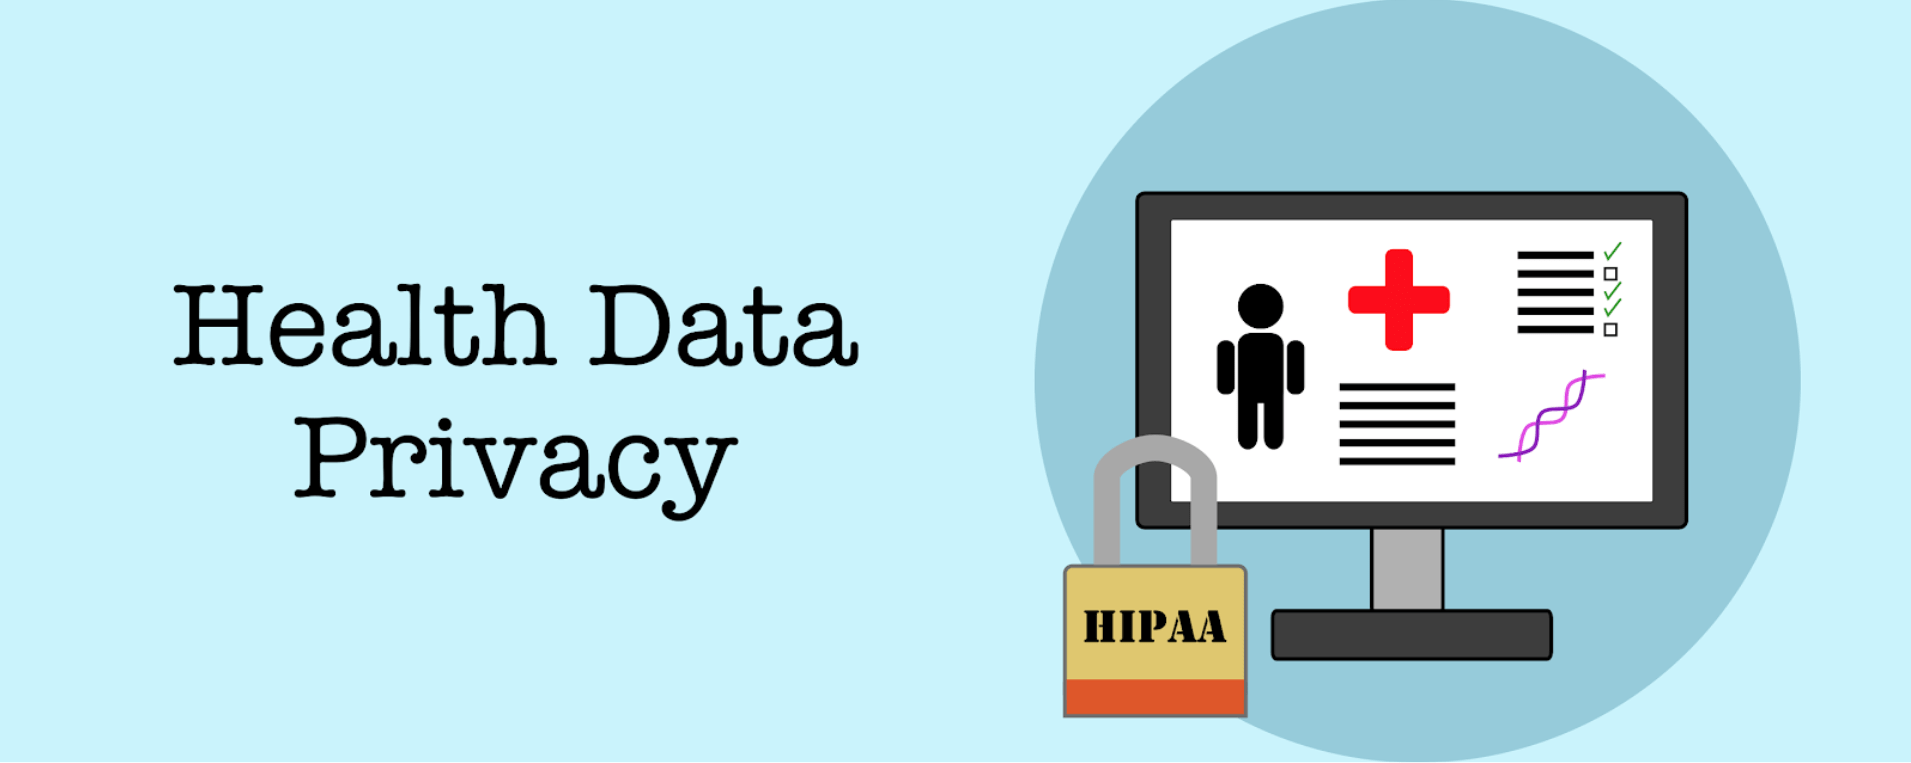 Health Data Privacy